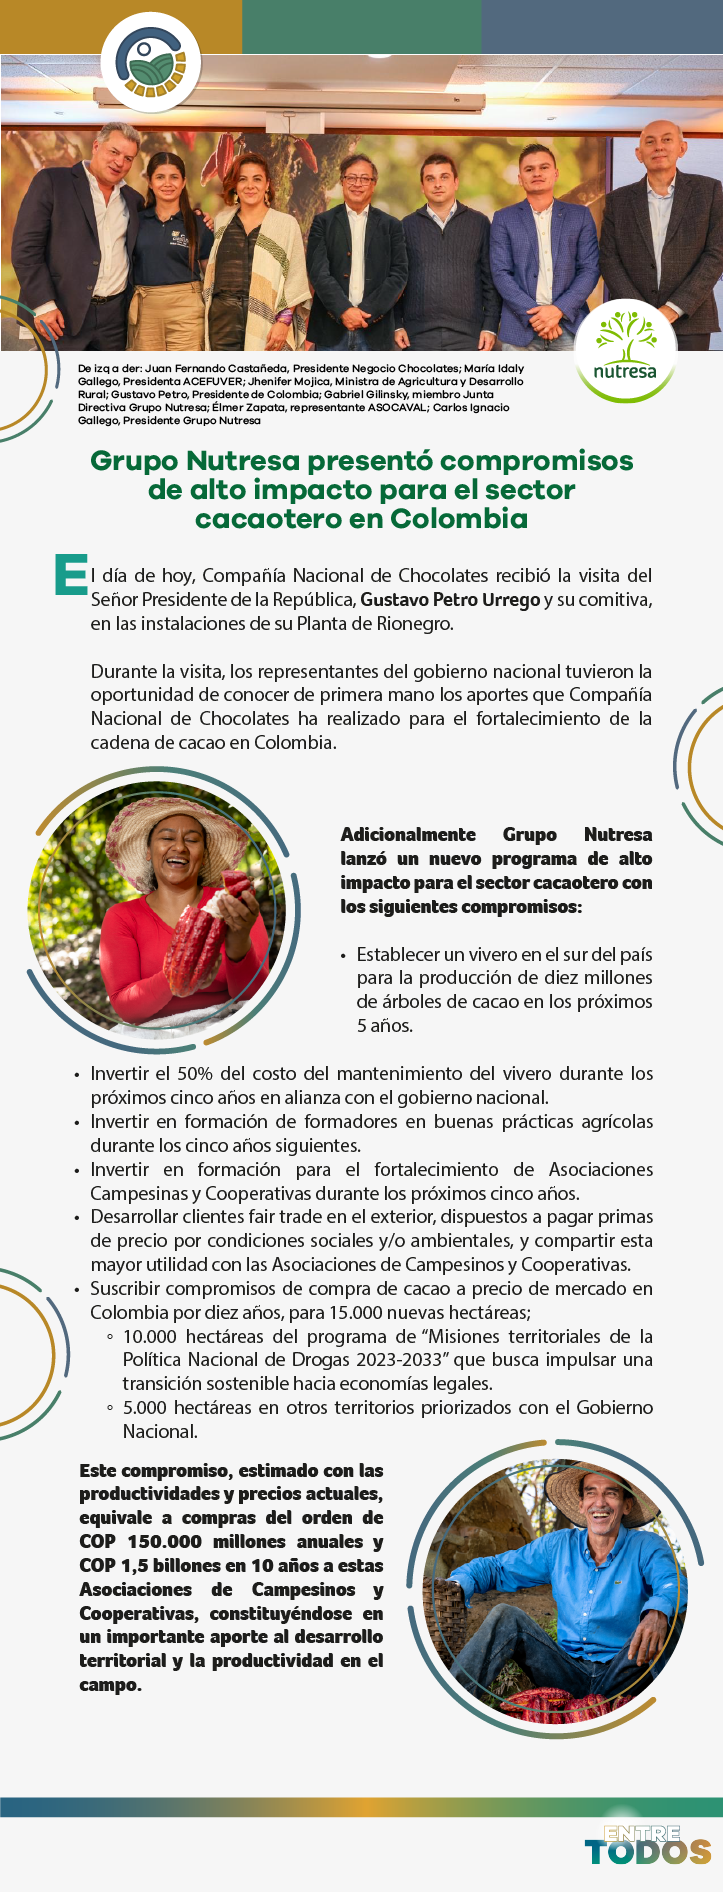 Grupo Nutresa presentó compromisos de alto impacto para el sector cacaotero en Colombia